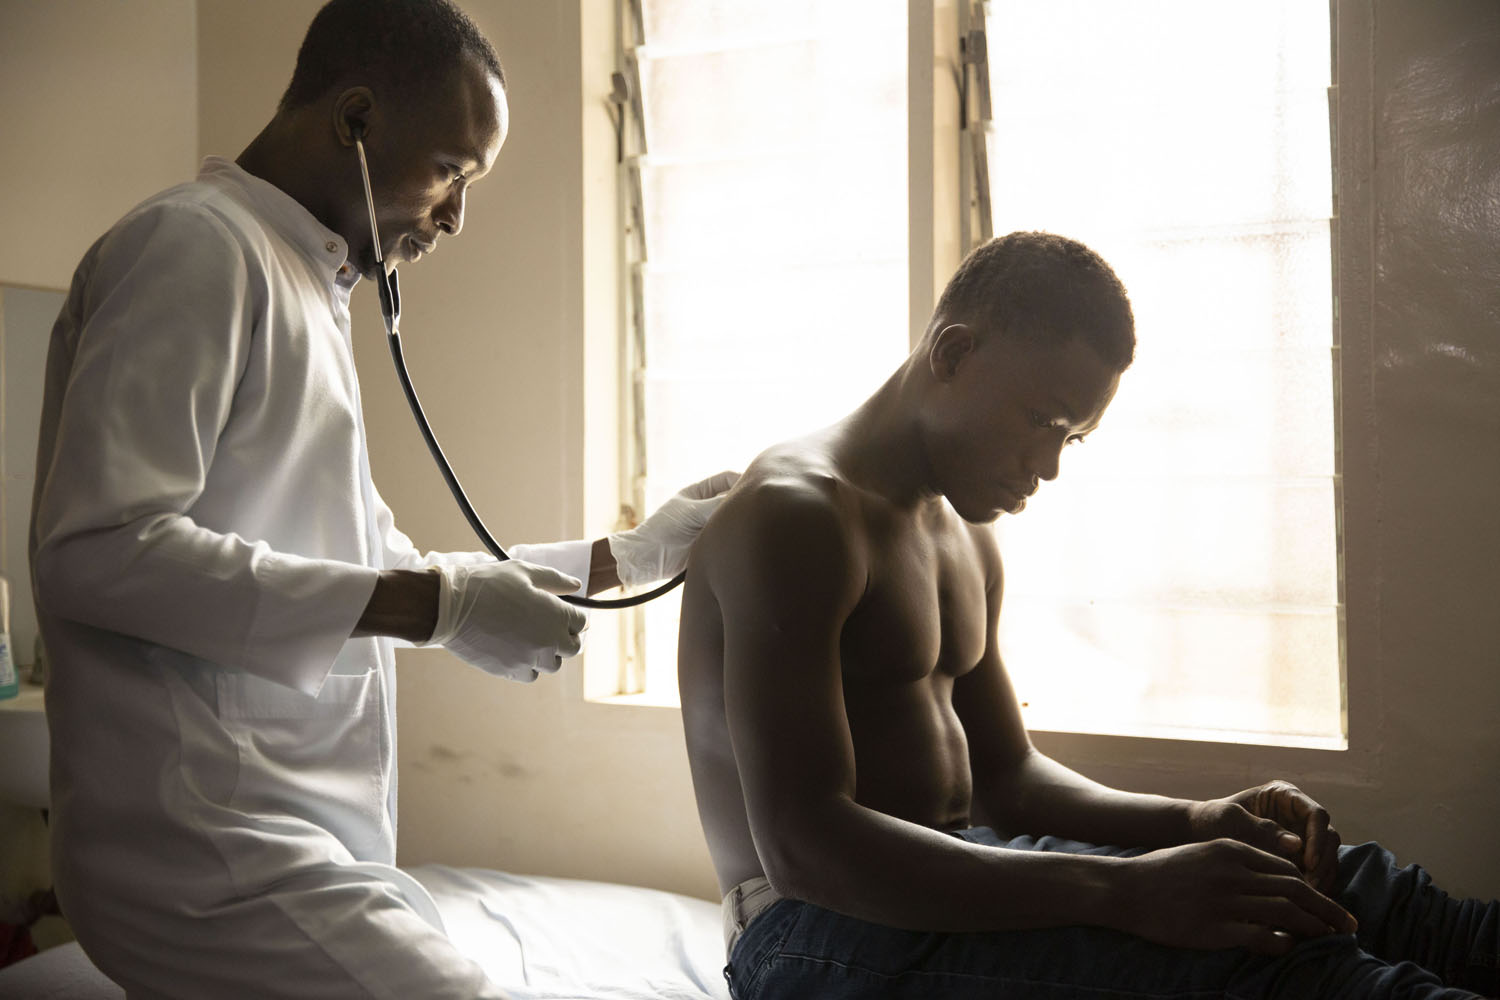 Healthcare Fotografie: In einem afrikanischen Krankenhaus untersucht ein Arzt einen jungen Patienten. Er hört mit dem Stethoskop die Lunge ab. Stimmungsvolle Gegenlichtaufnahme.